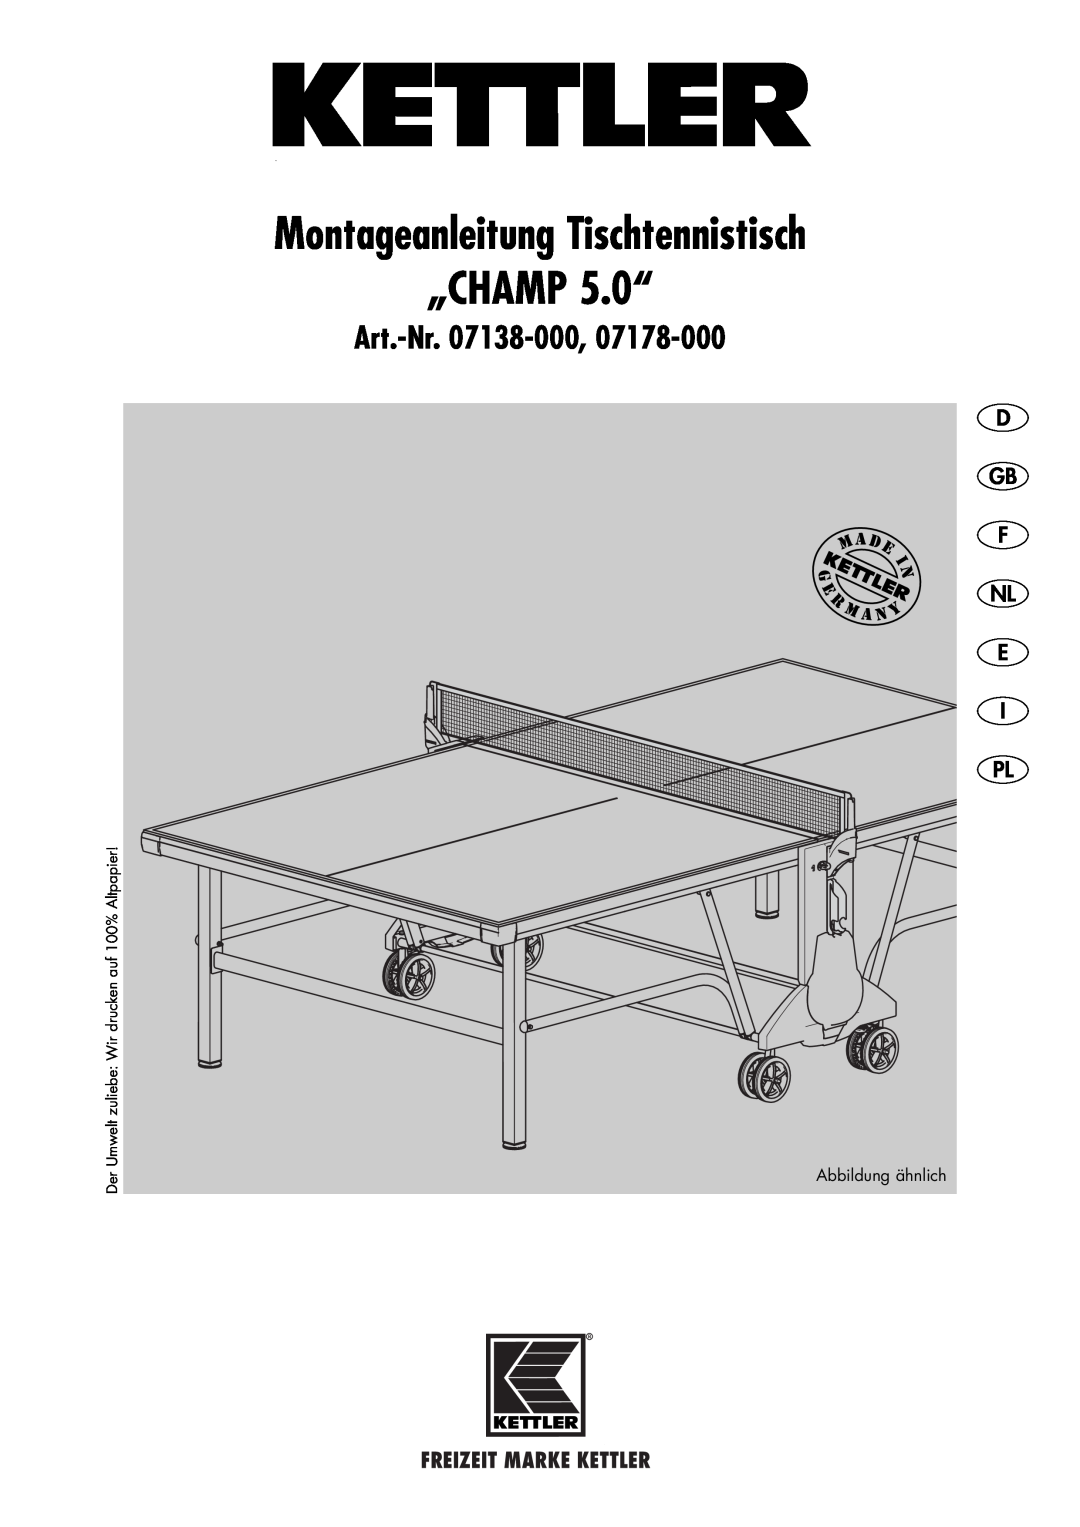 Kettler 07178-000 manual D Gb F Nl E I Pl, Montageanleitung Tischtennistisch „CHAMP 5.0“, Art.-Nr. 07138-000 